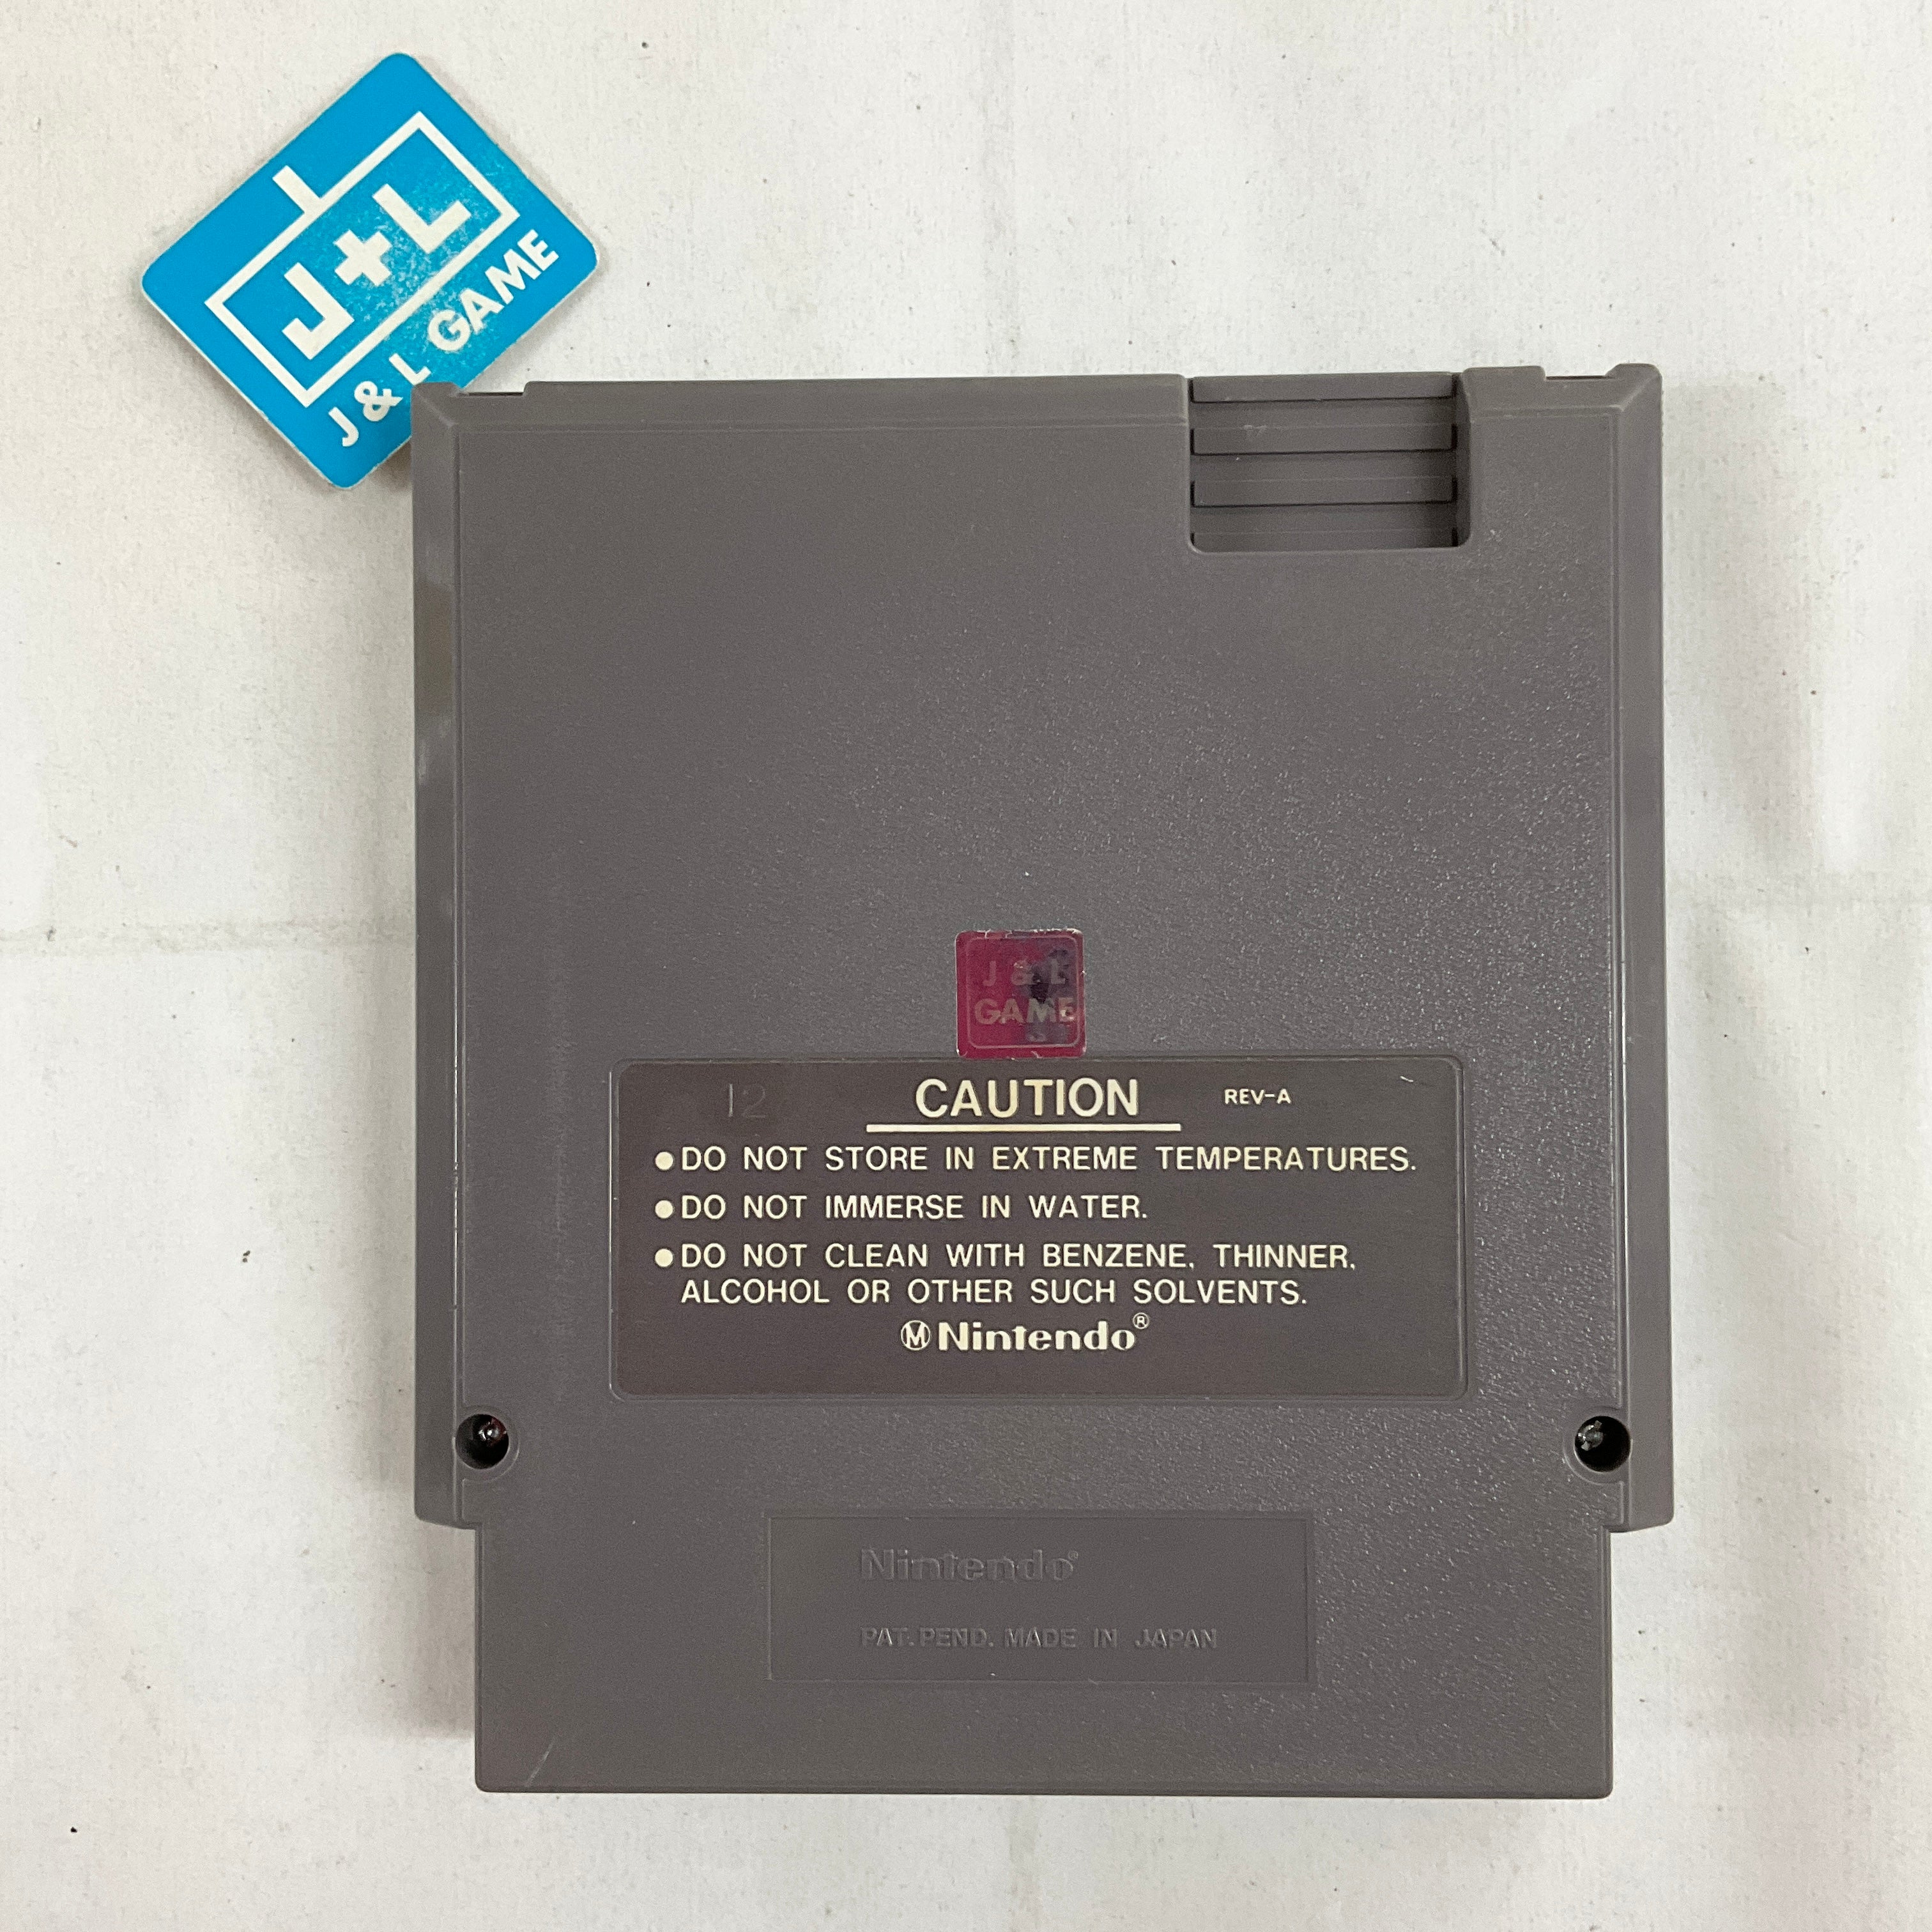 Gun.Smoke - (NES) Nintendo Entertainment System [Pre-Owned] Video Games Capcom   